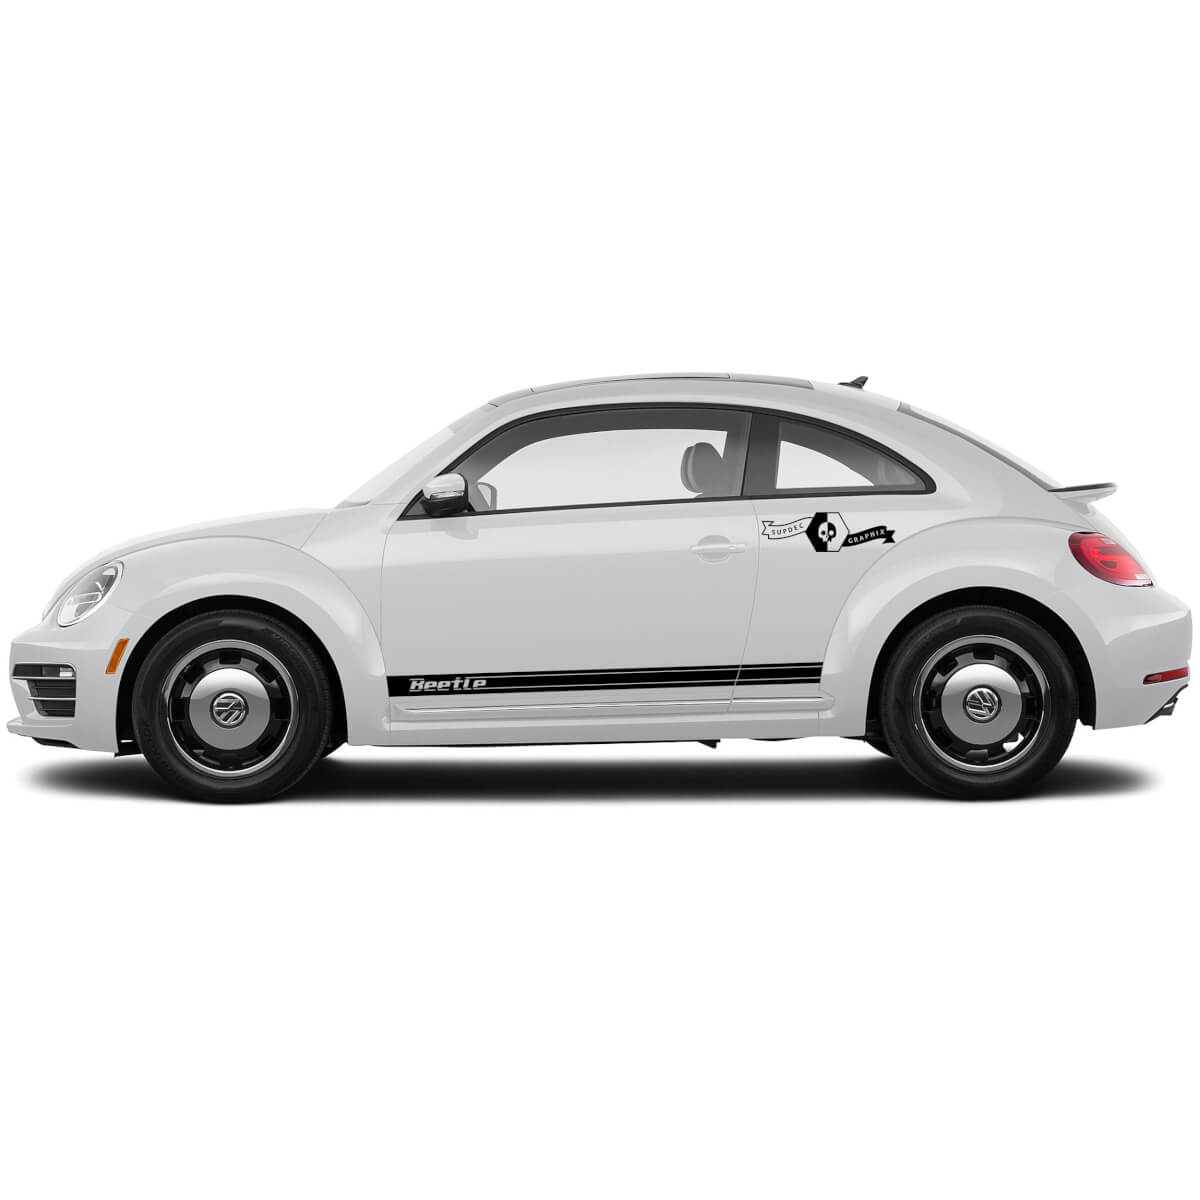 Accoppiamenti Volkswagen Beetle Rocker Stripe Striscia grafica decalcomanie linee stile retrò adattarsi a qualsiasi anno